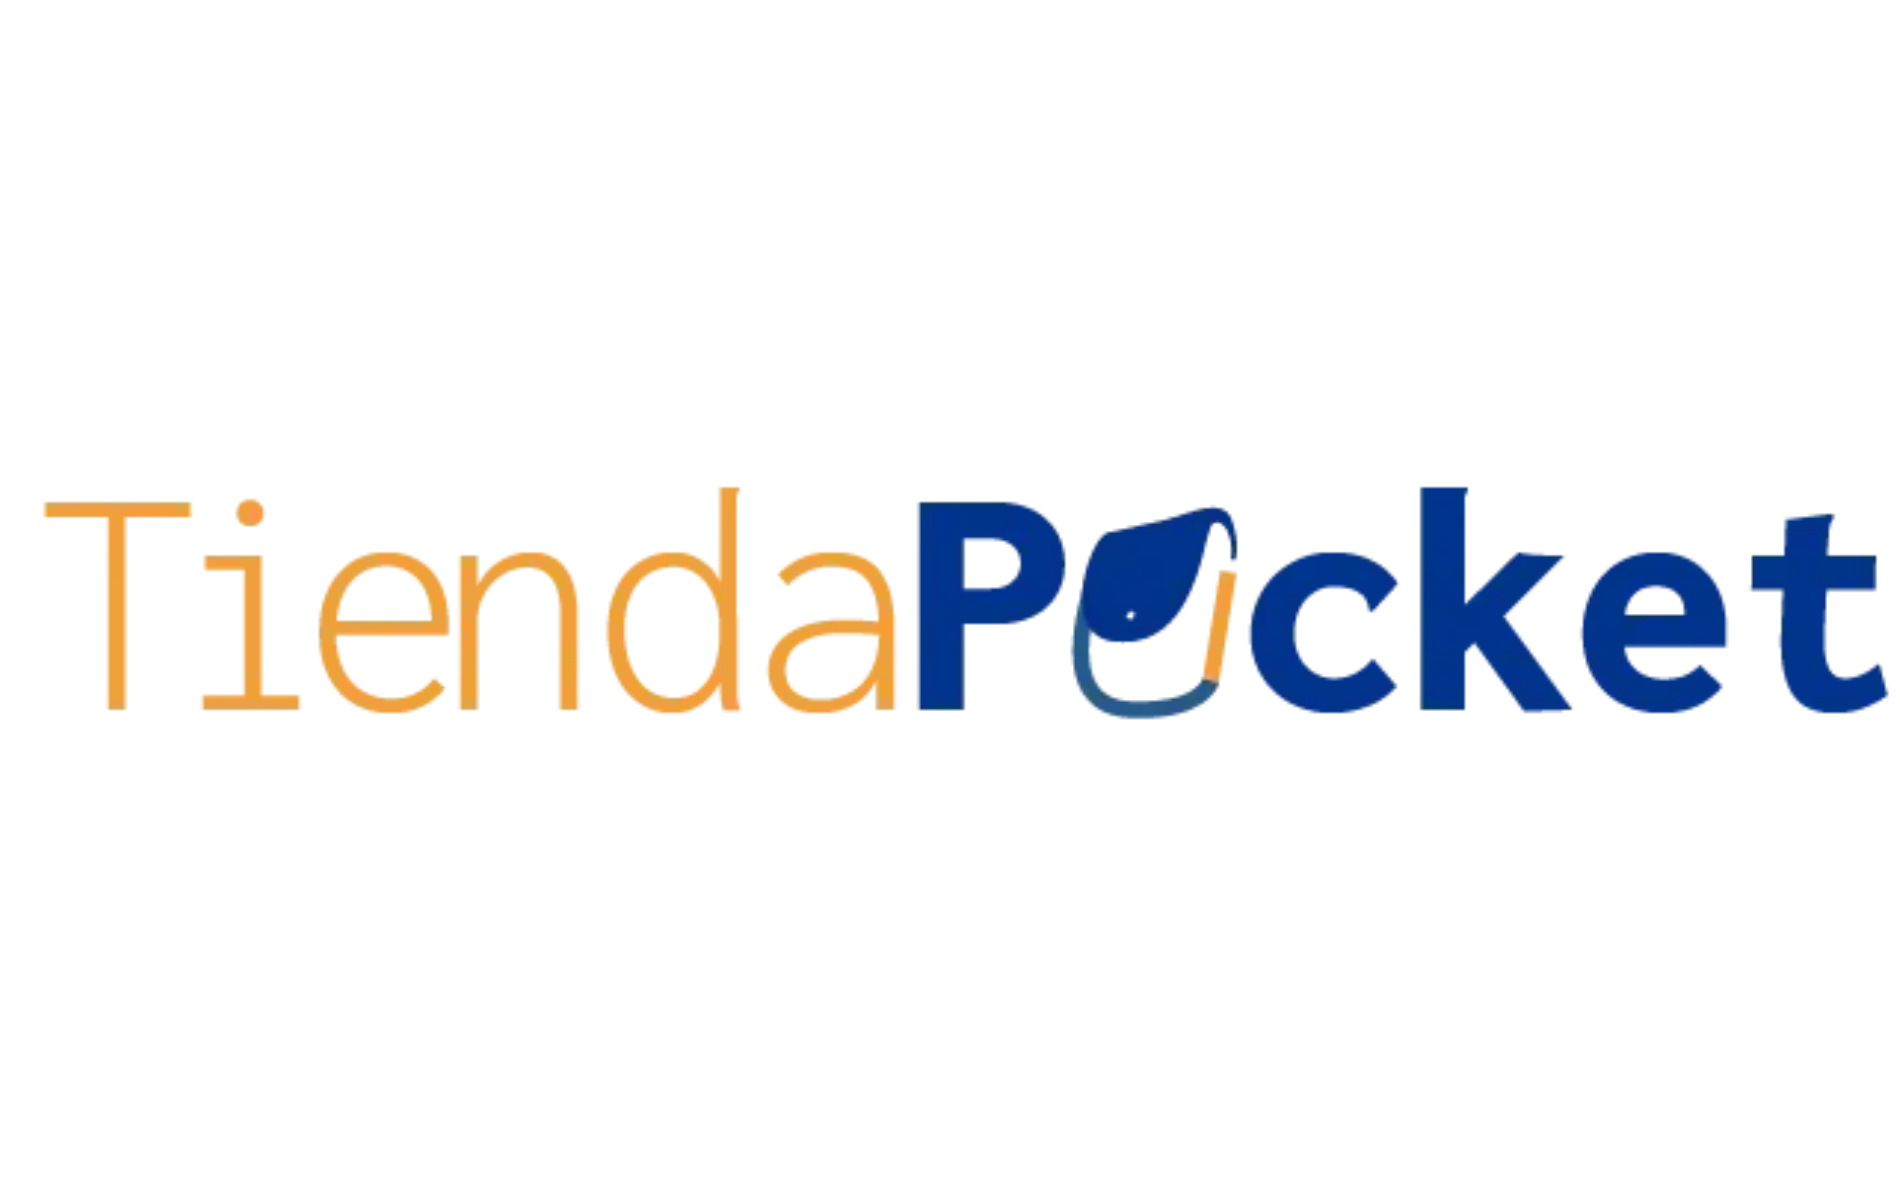 Tienda Pocket - Desarrollo Web